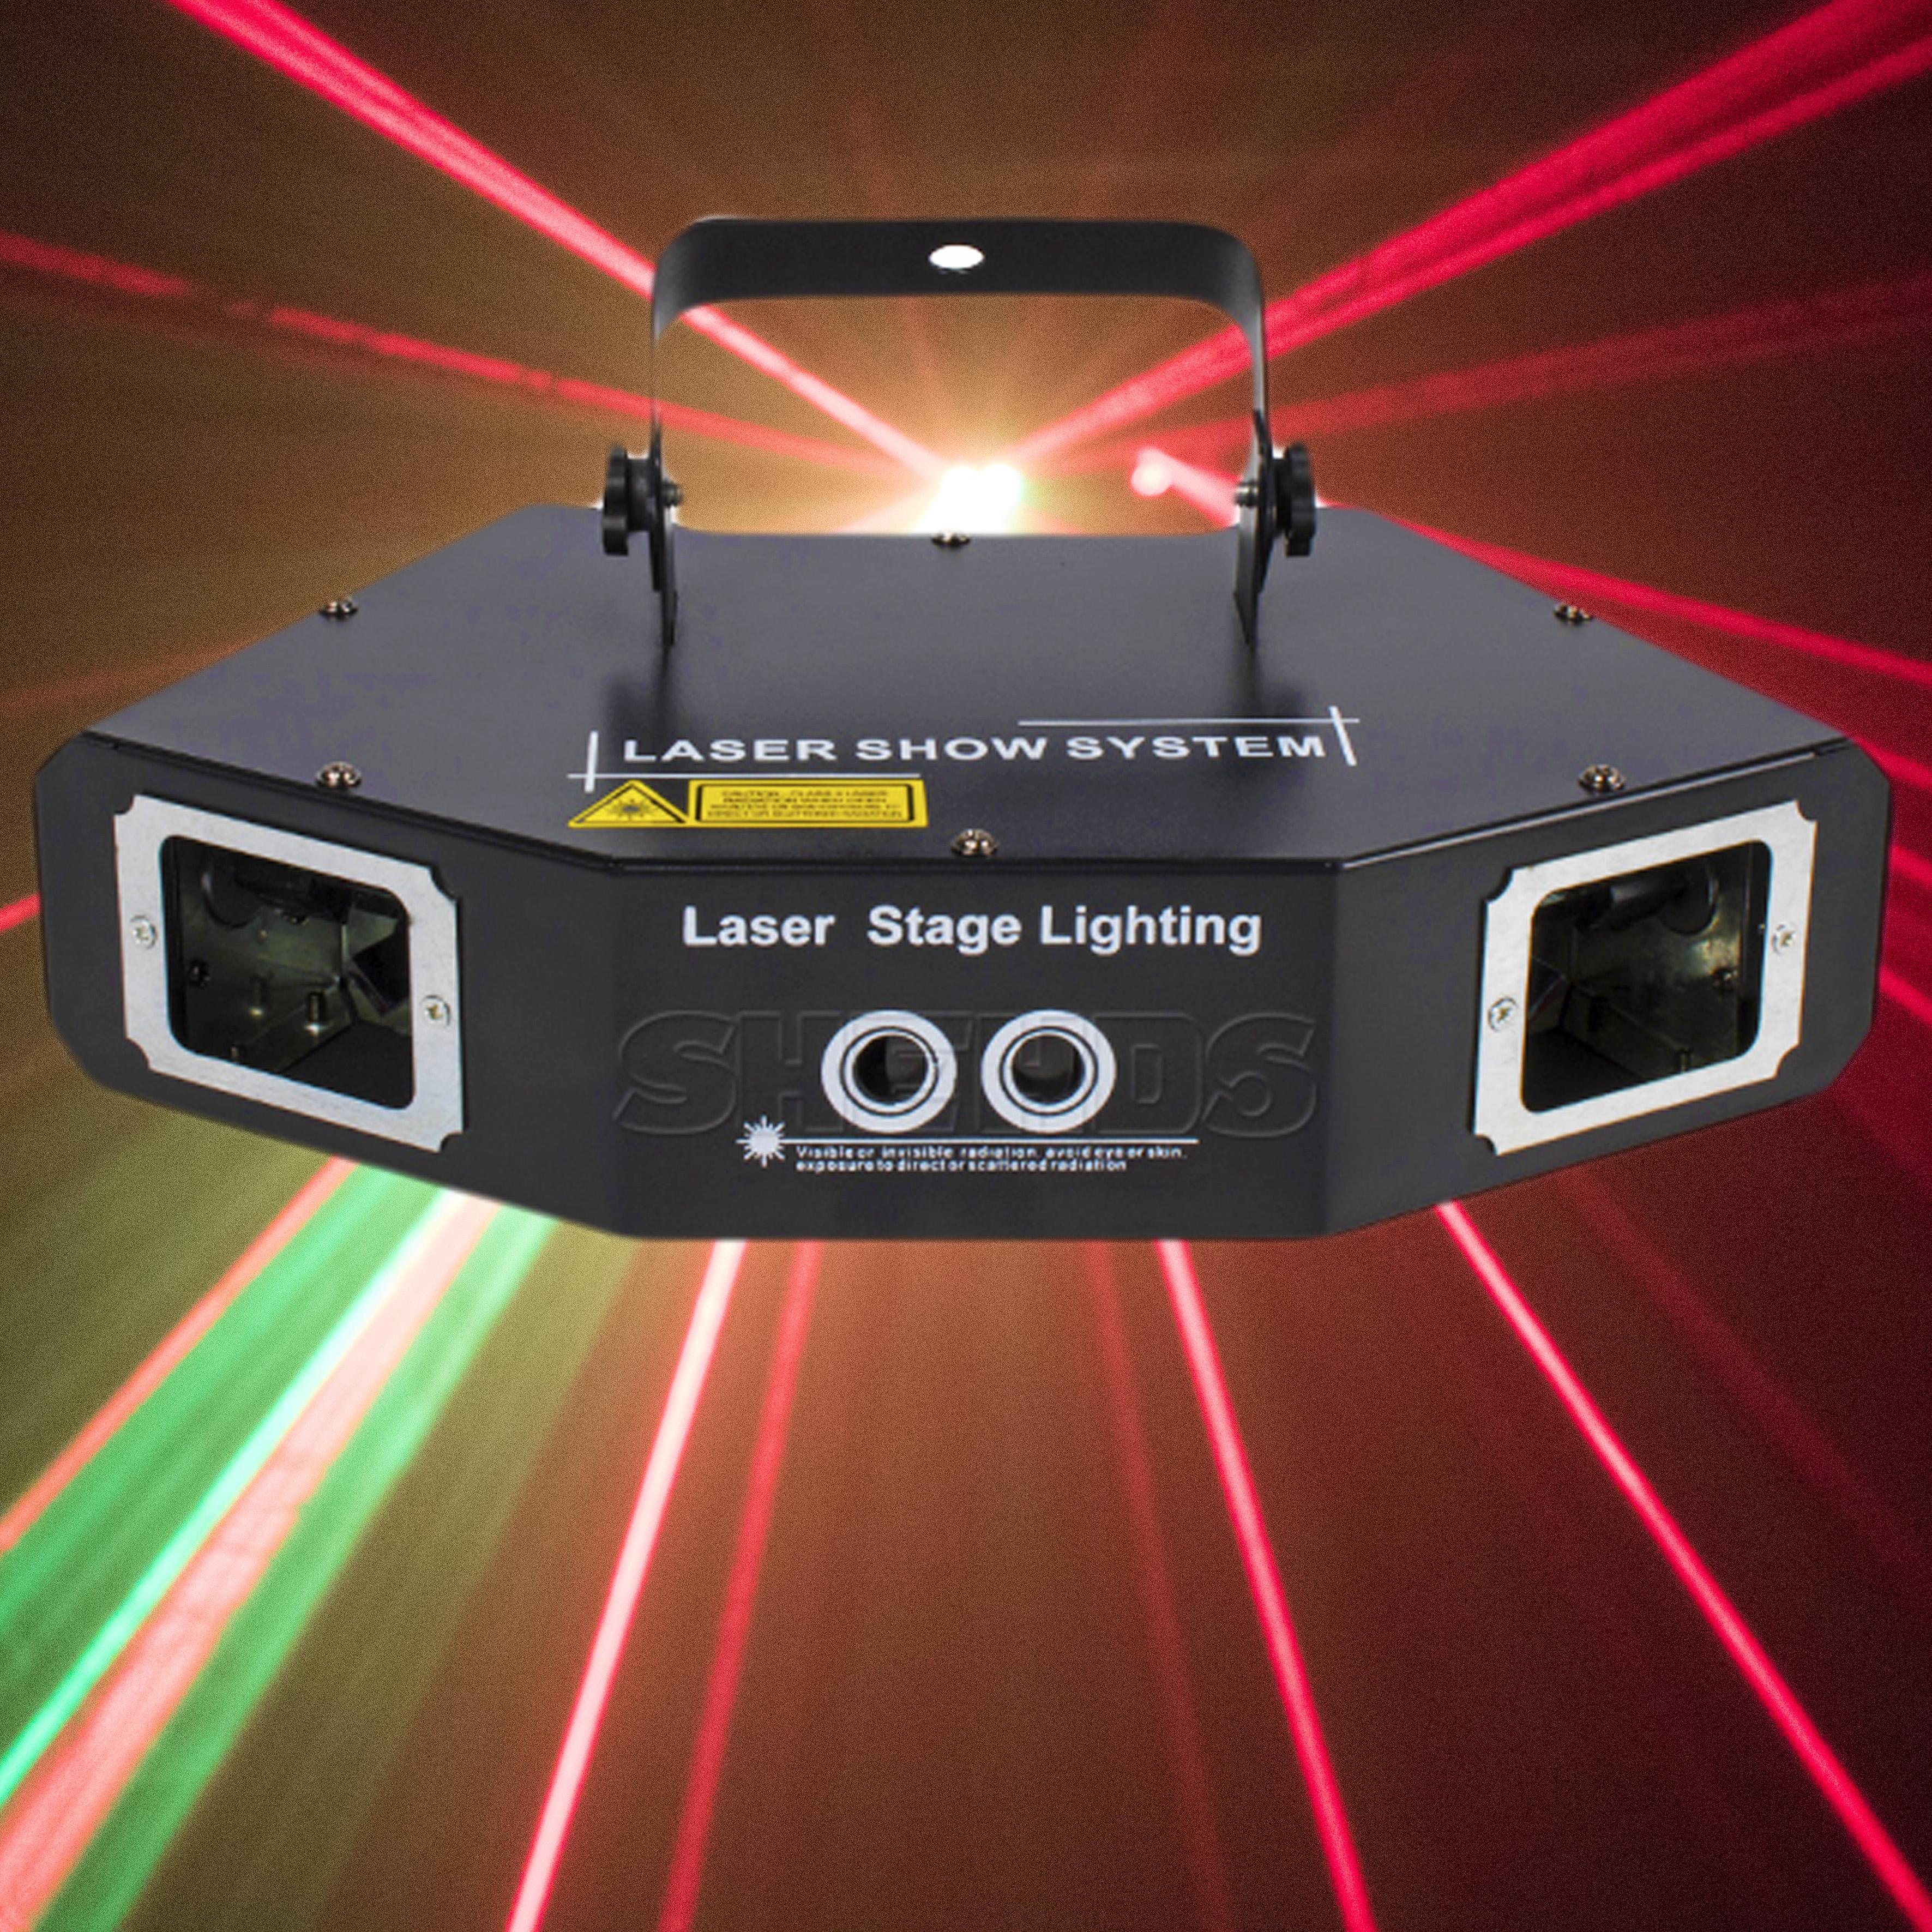 Изображение товара: Лазерный сканер Gobo DMX512 с четырьмя глазами, красного, зеленого и синего цветов, освещение со сценическим эффектом, подходит для диджея, дискотевечерние НКИ и рождественских украшений